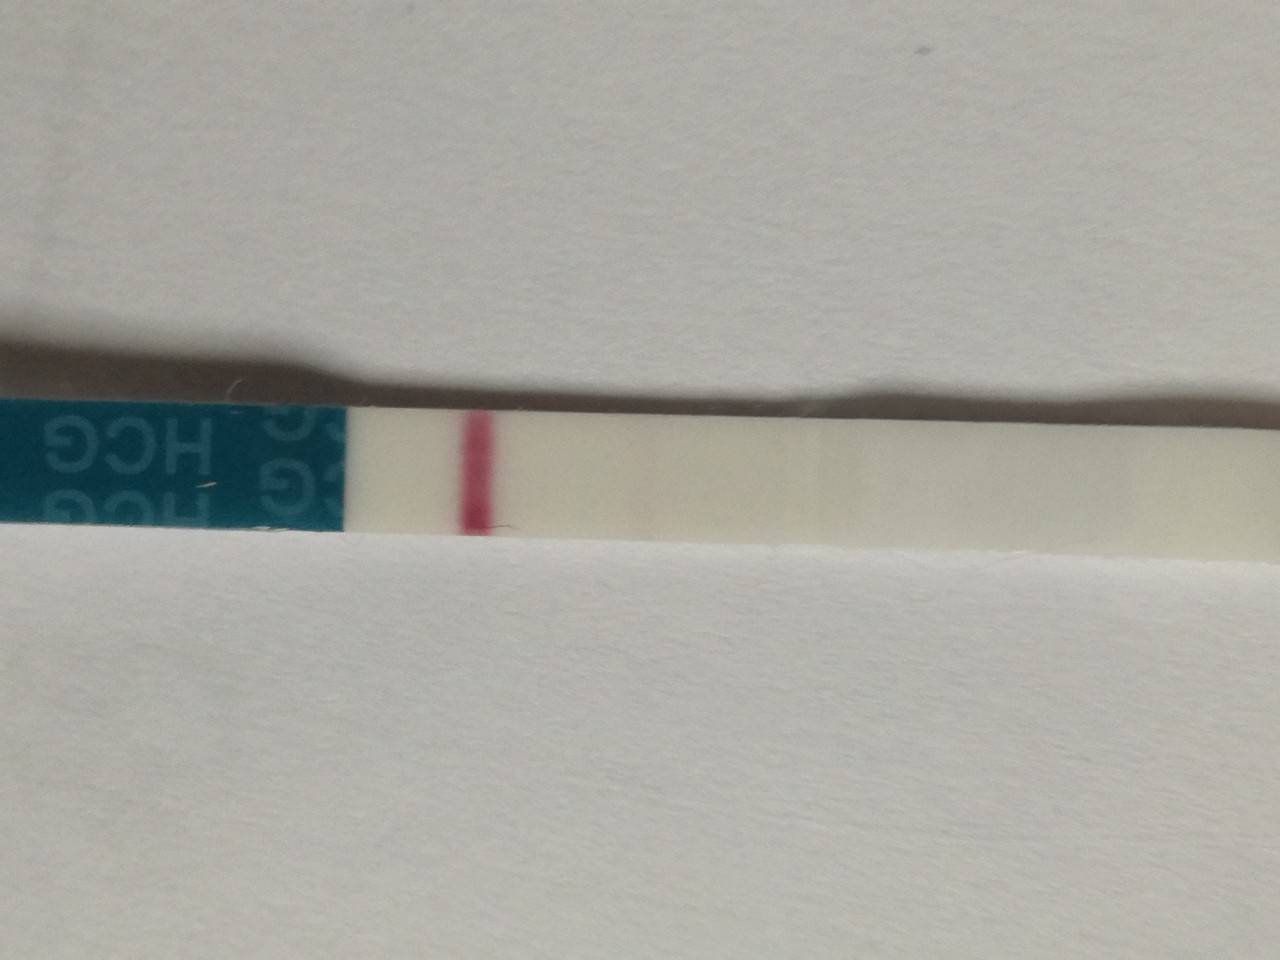 Слабая вторая полоска на тесте на беременность - если тест показал бледную вторую полоску